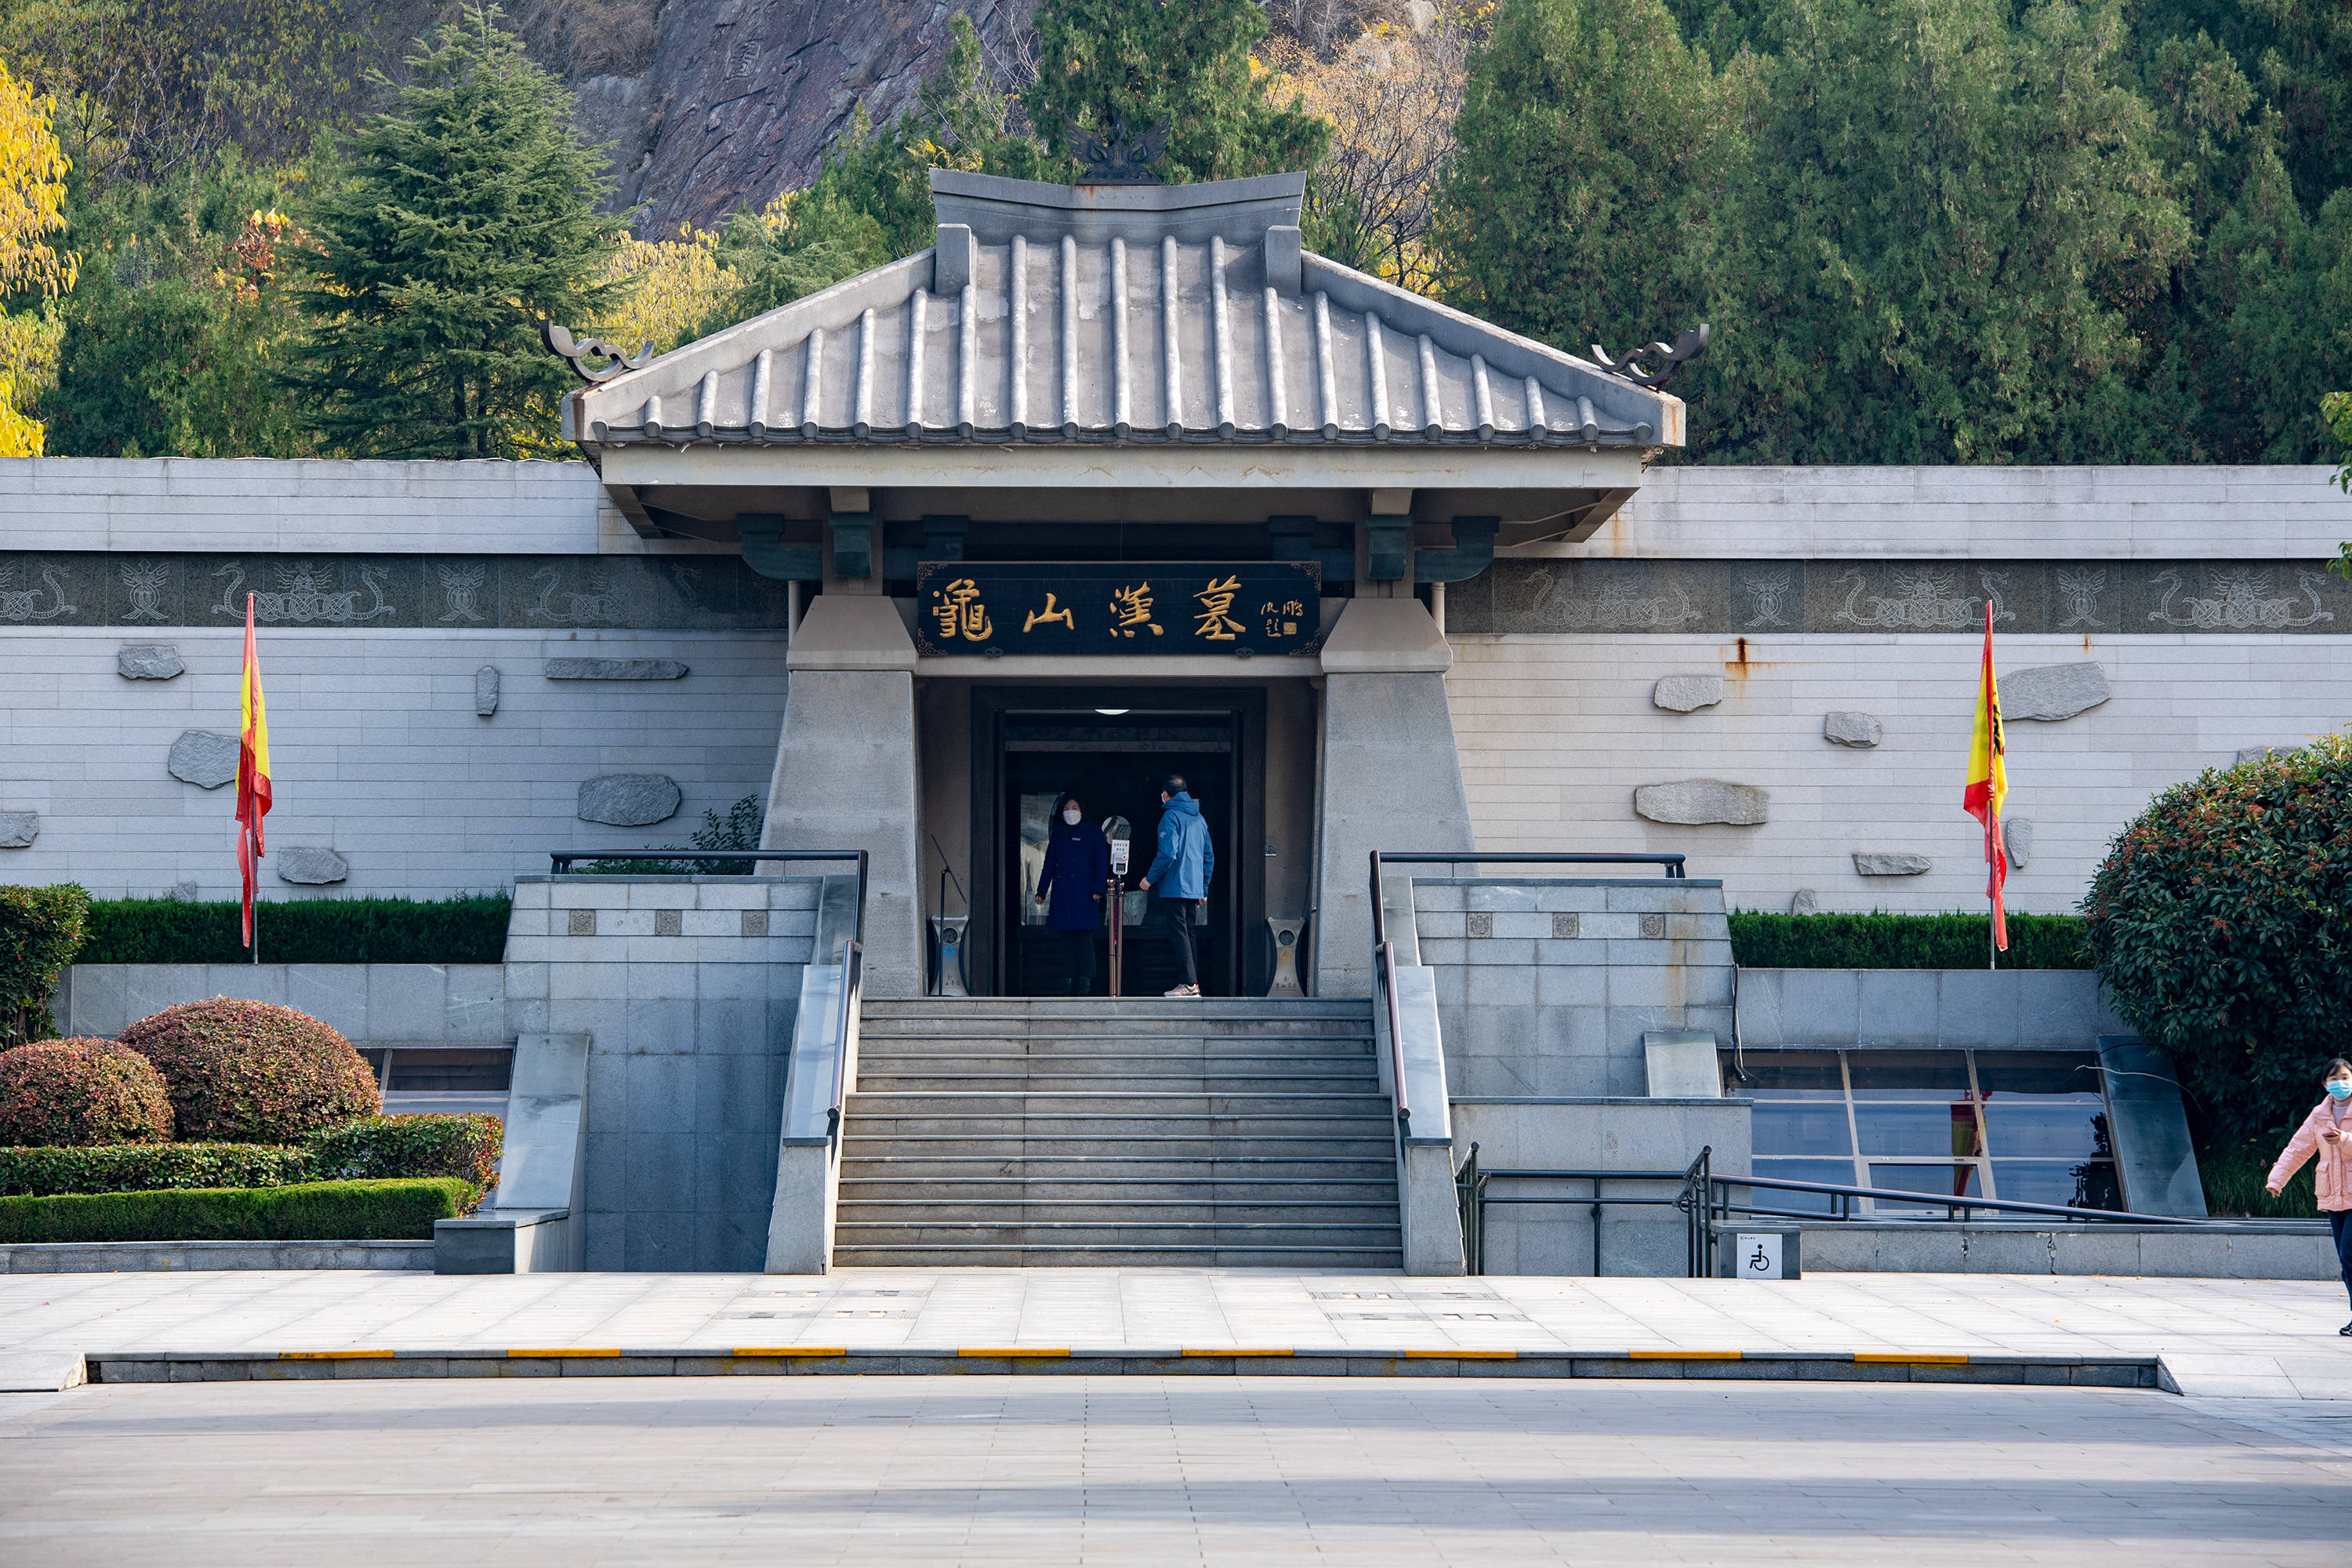 龟山汉墓景区包括龟山汉墓,点石院和圣旨博物馆三个景点